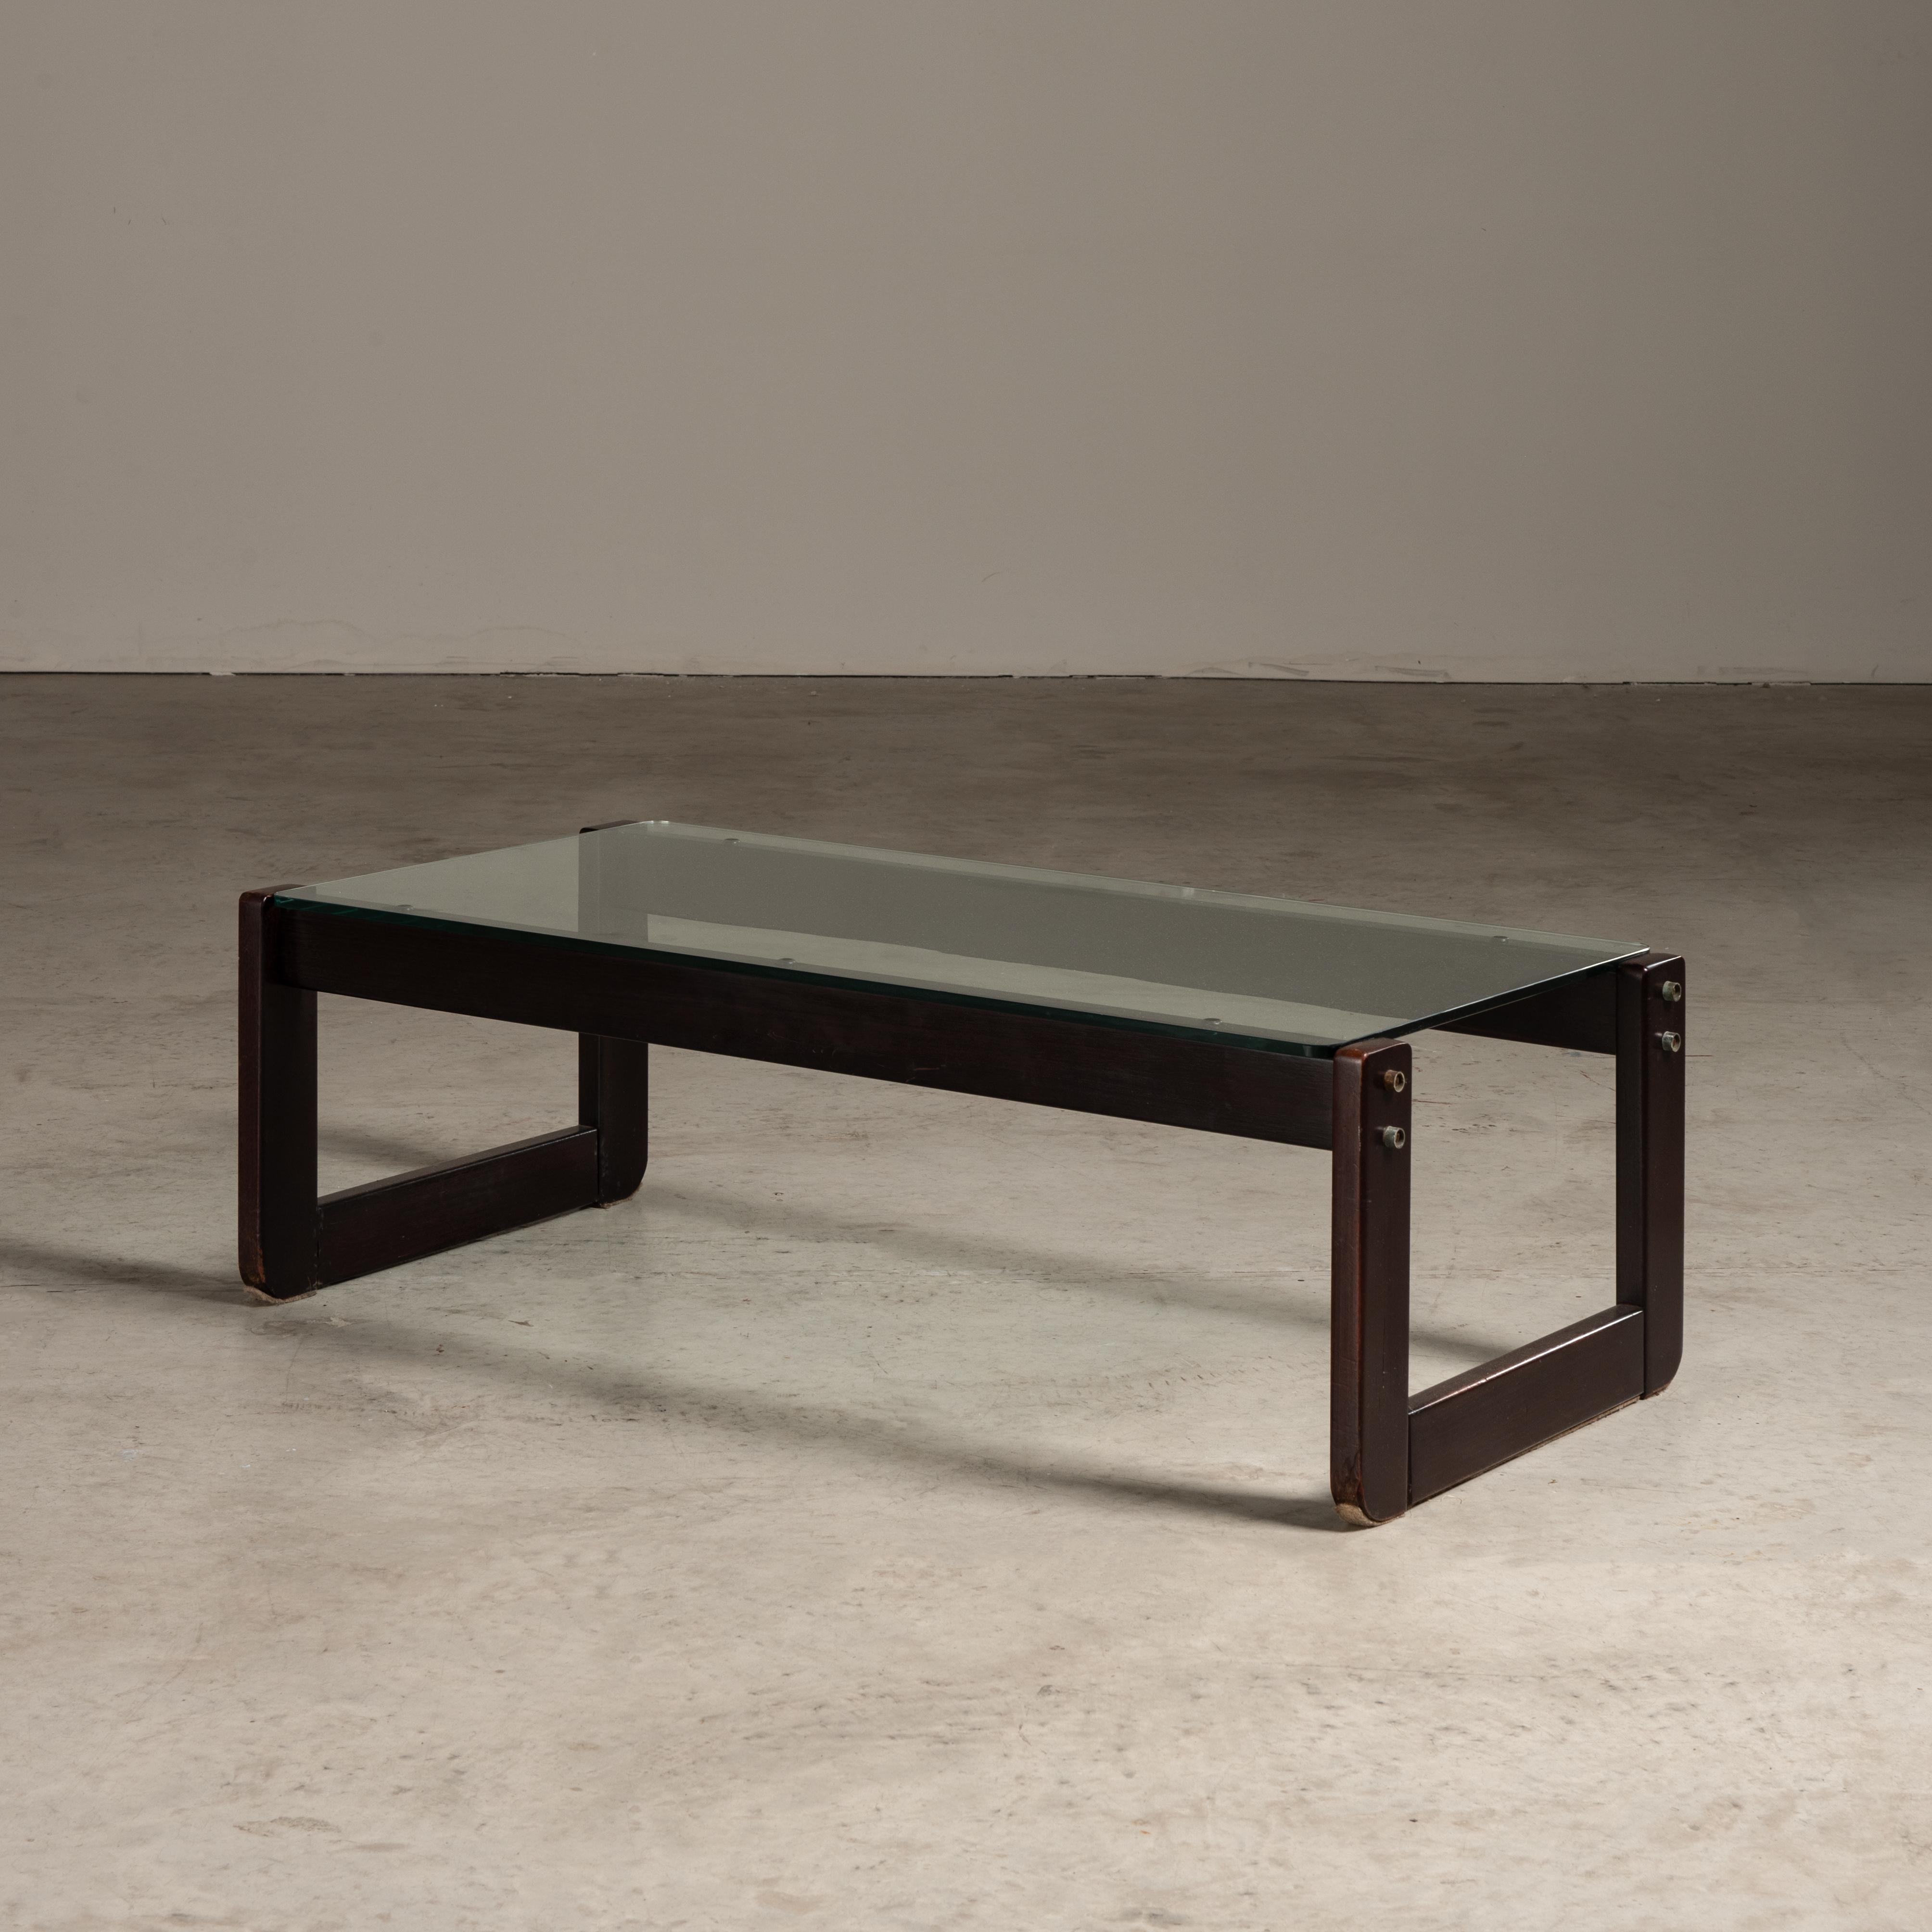 Der Mitteltisch von Percival Lafer, einem bekannten brasilianischen Möbeldesigner, ist ein klassisches Beispiel für das Design der Mitte des 20. Jahrhunderts. Es zeichnet sich durch eine minimalistische und funktionale Ästhetik aus, die